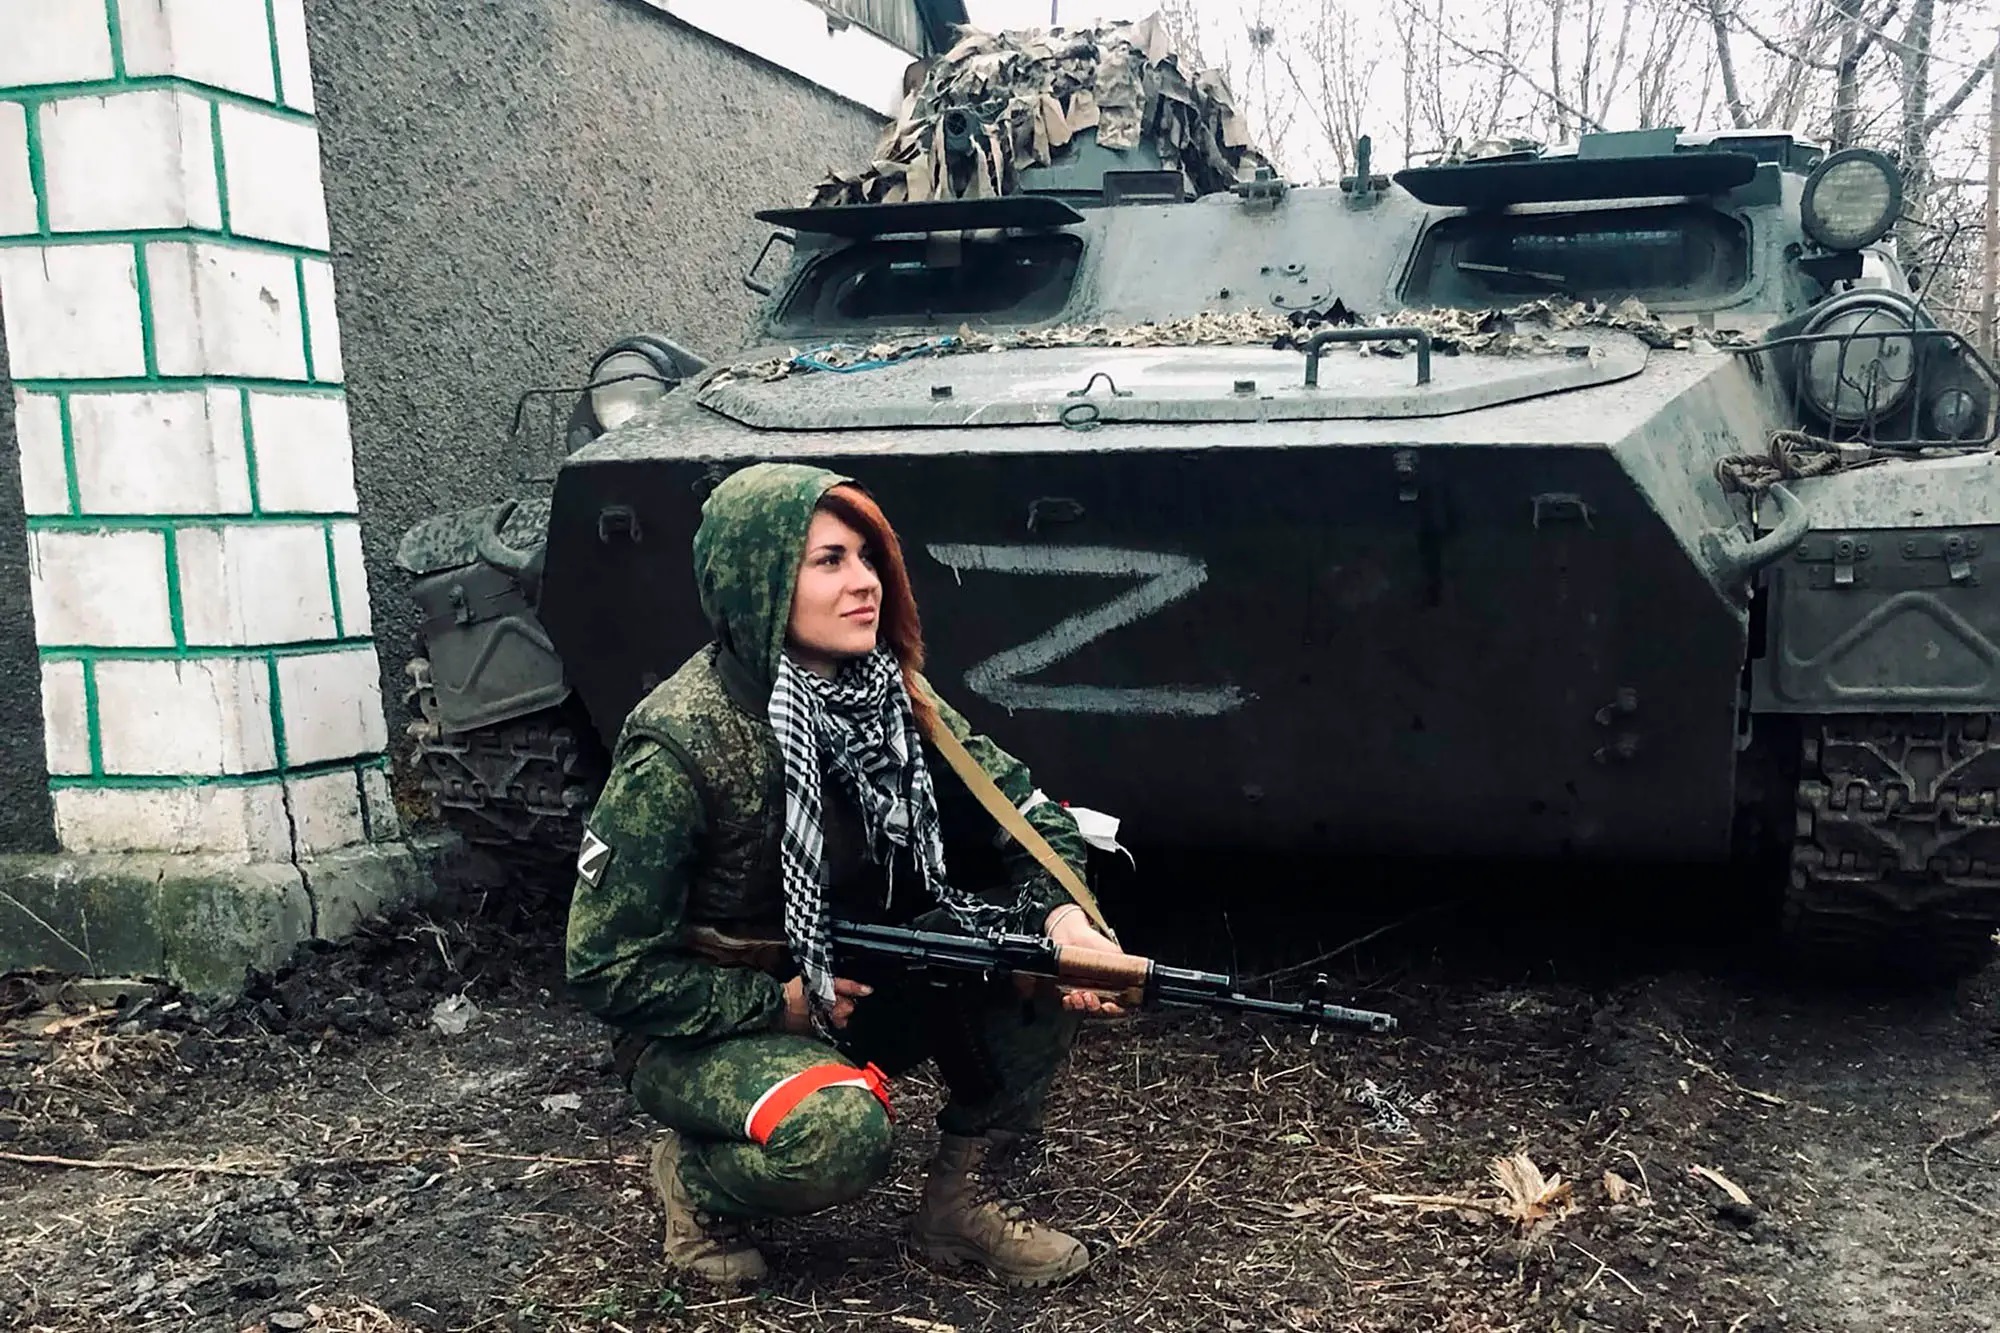 Báo Anh: Nữ quân nhân Nga đầu tiên thiệt mạng trong trận chiến ác liệt ở Mariupol ở Ukraine - Ảnh 1.